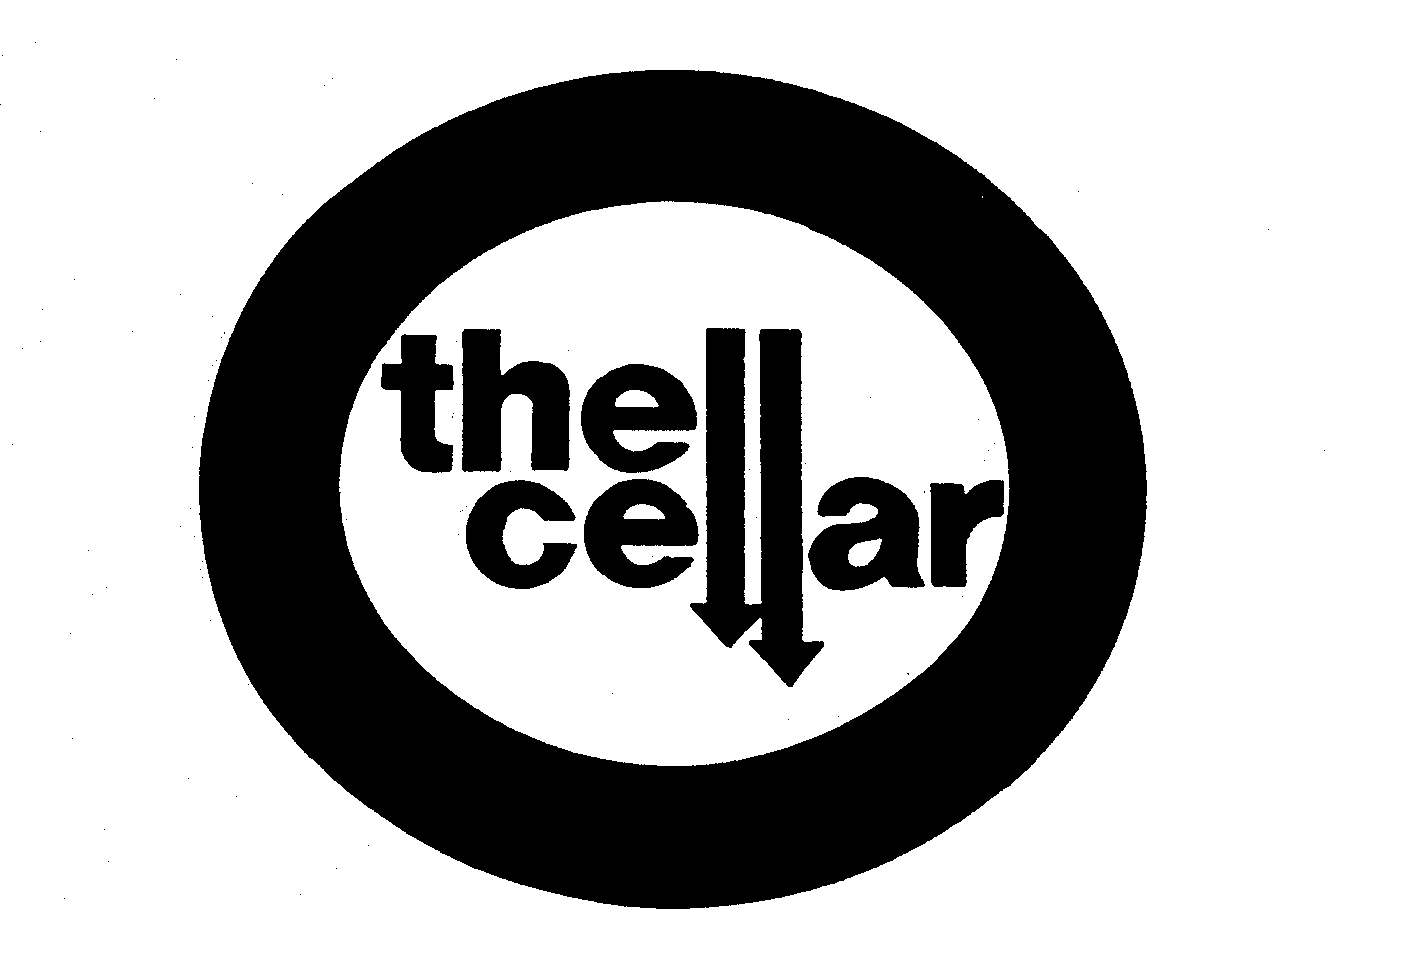  THE CELLAR